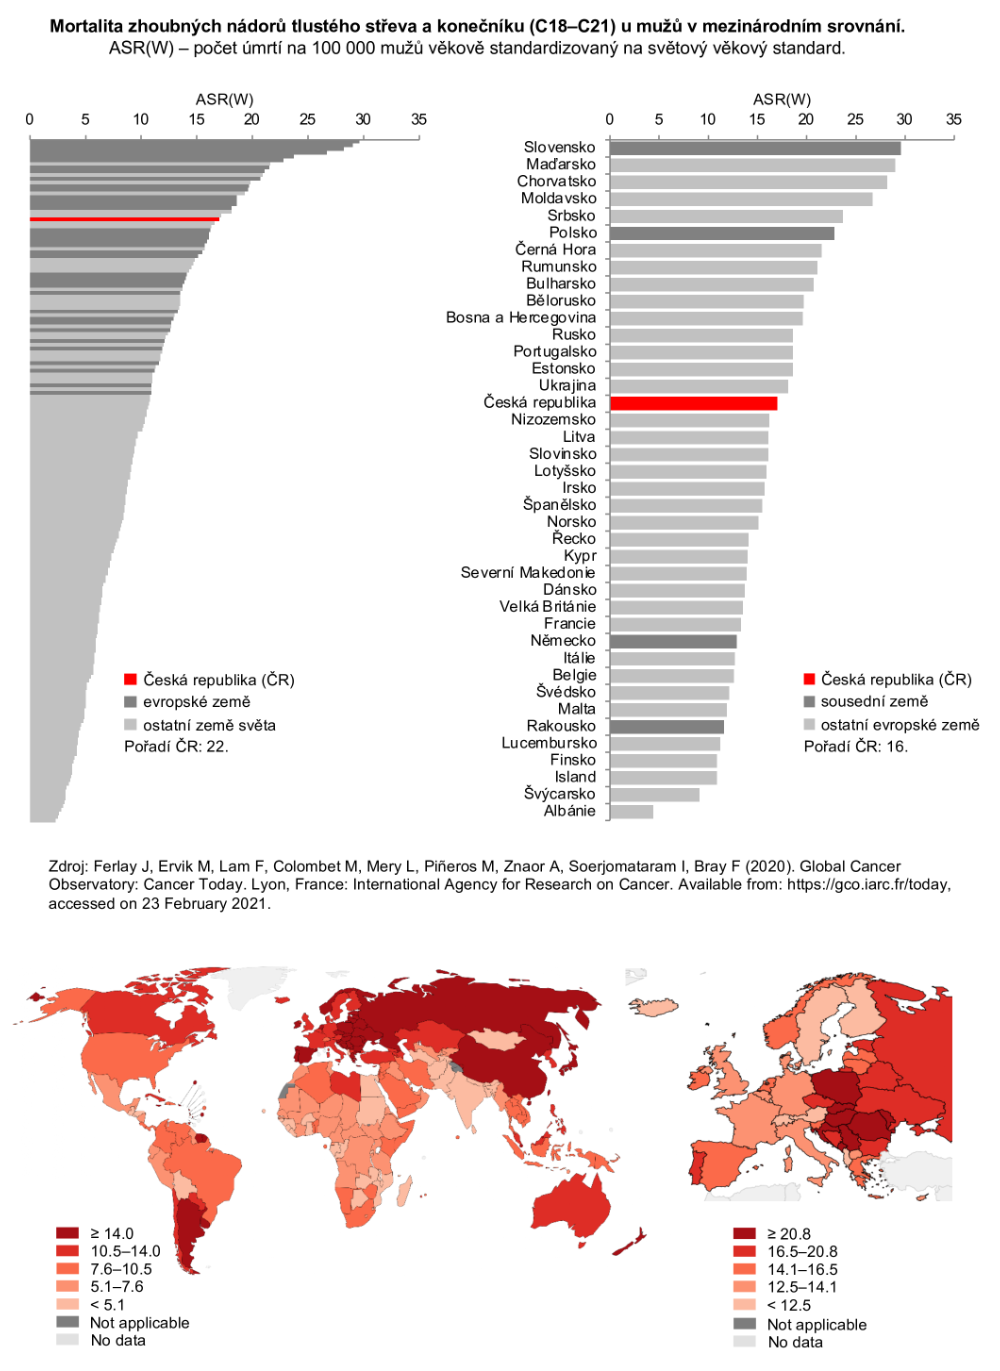 Obrázek 2b: Mortalita nádorů tlustého střeva a konečníku v mezinárodním srovnání – muži. ASR(W) - počet zemřelých na nádor na 100 000 osob věkově standardizovaný na světový věkový standard. Zdroj: GLOBOCAN 2020